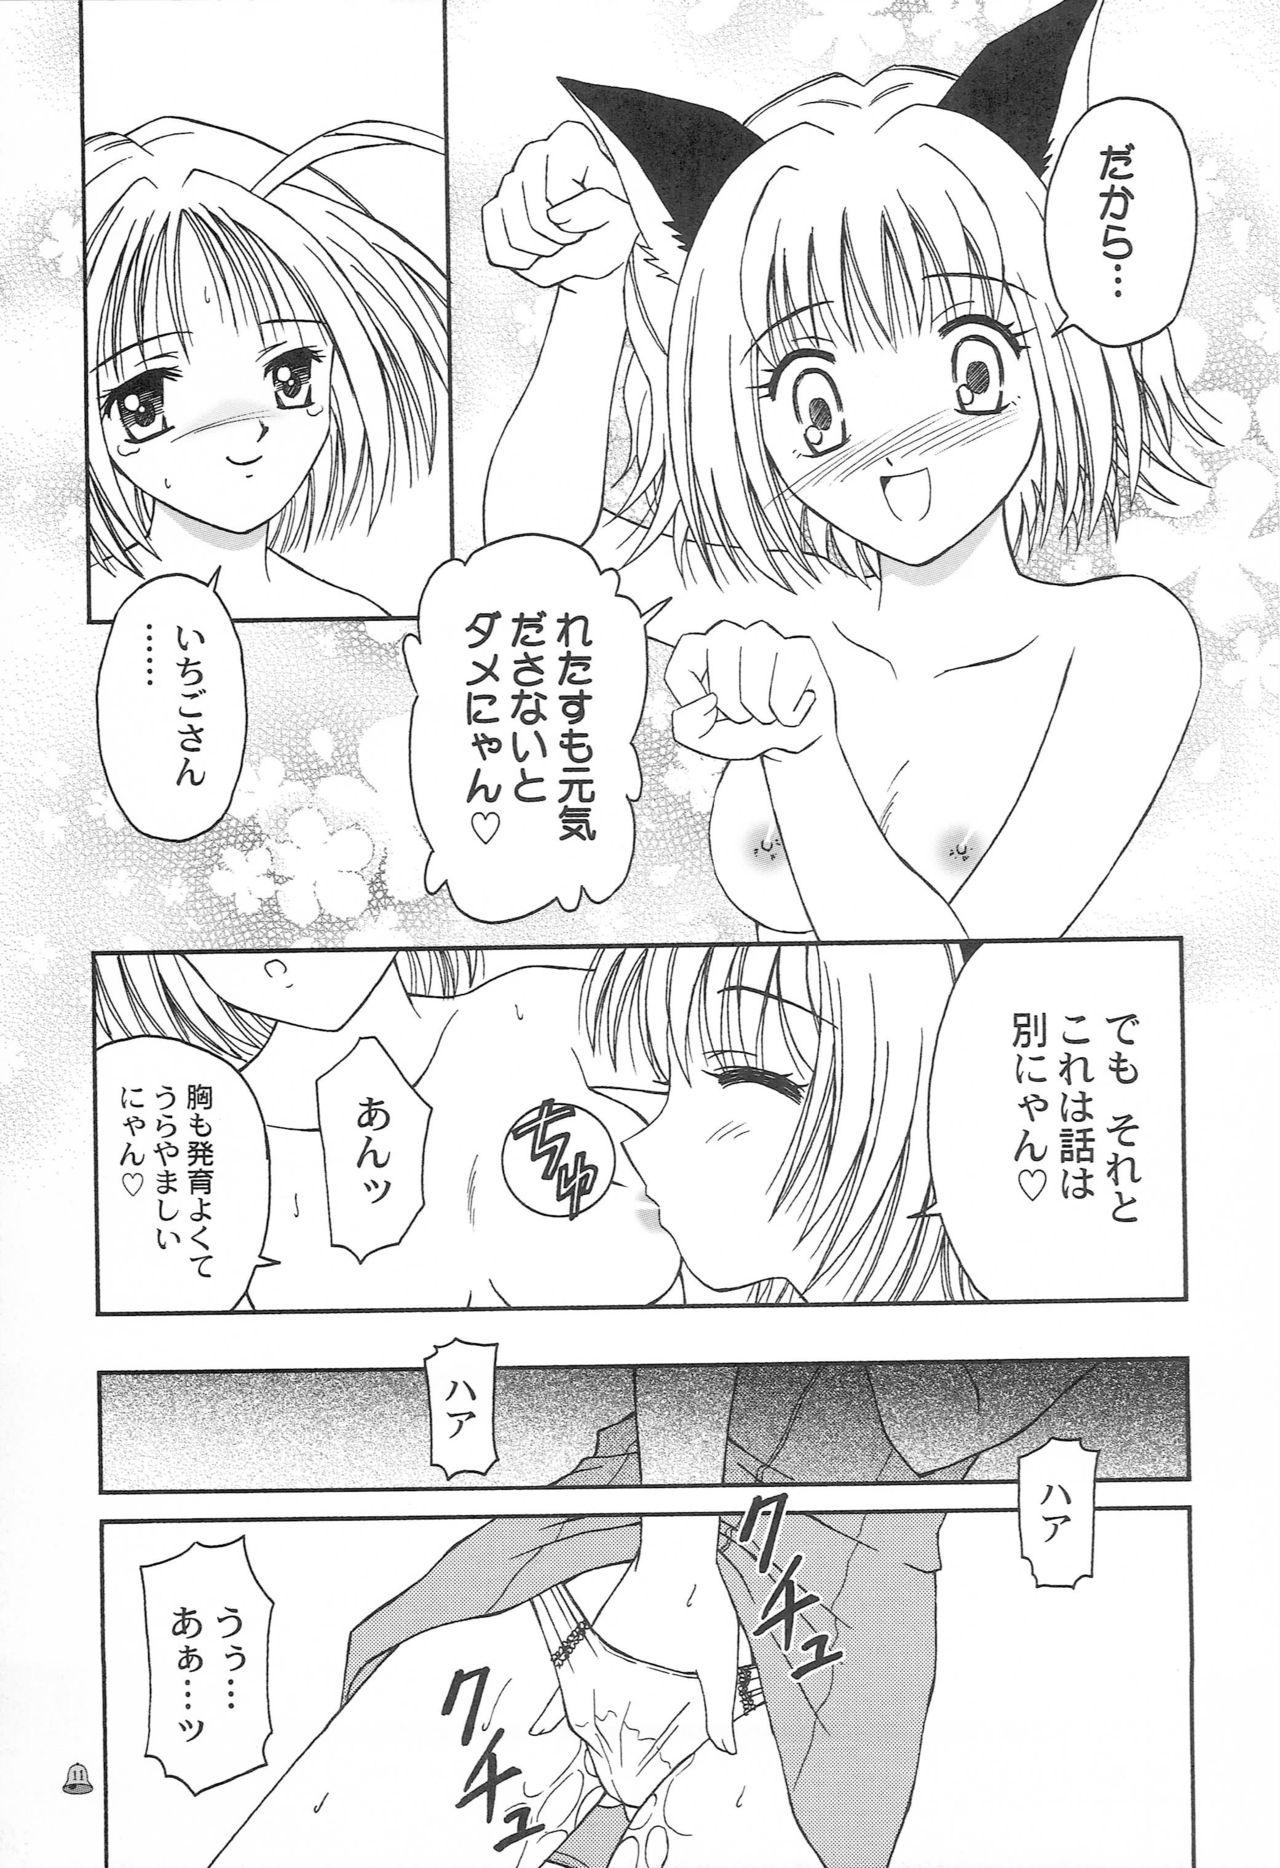 Calcinha Saturday Morning Musume - Tokyo mew mew | mew mew power Full moon o sagashite Pija - Page 10